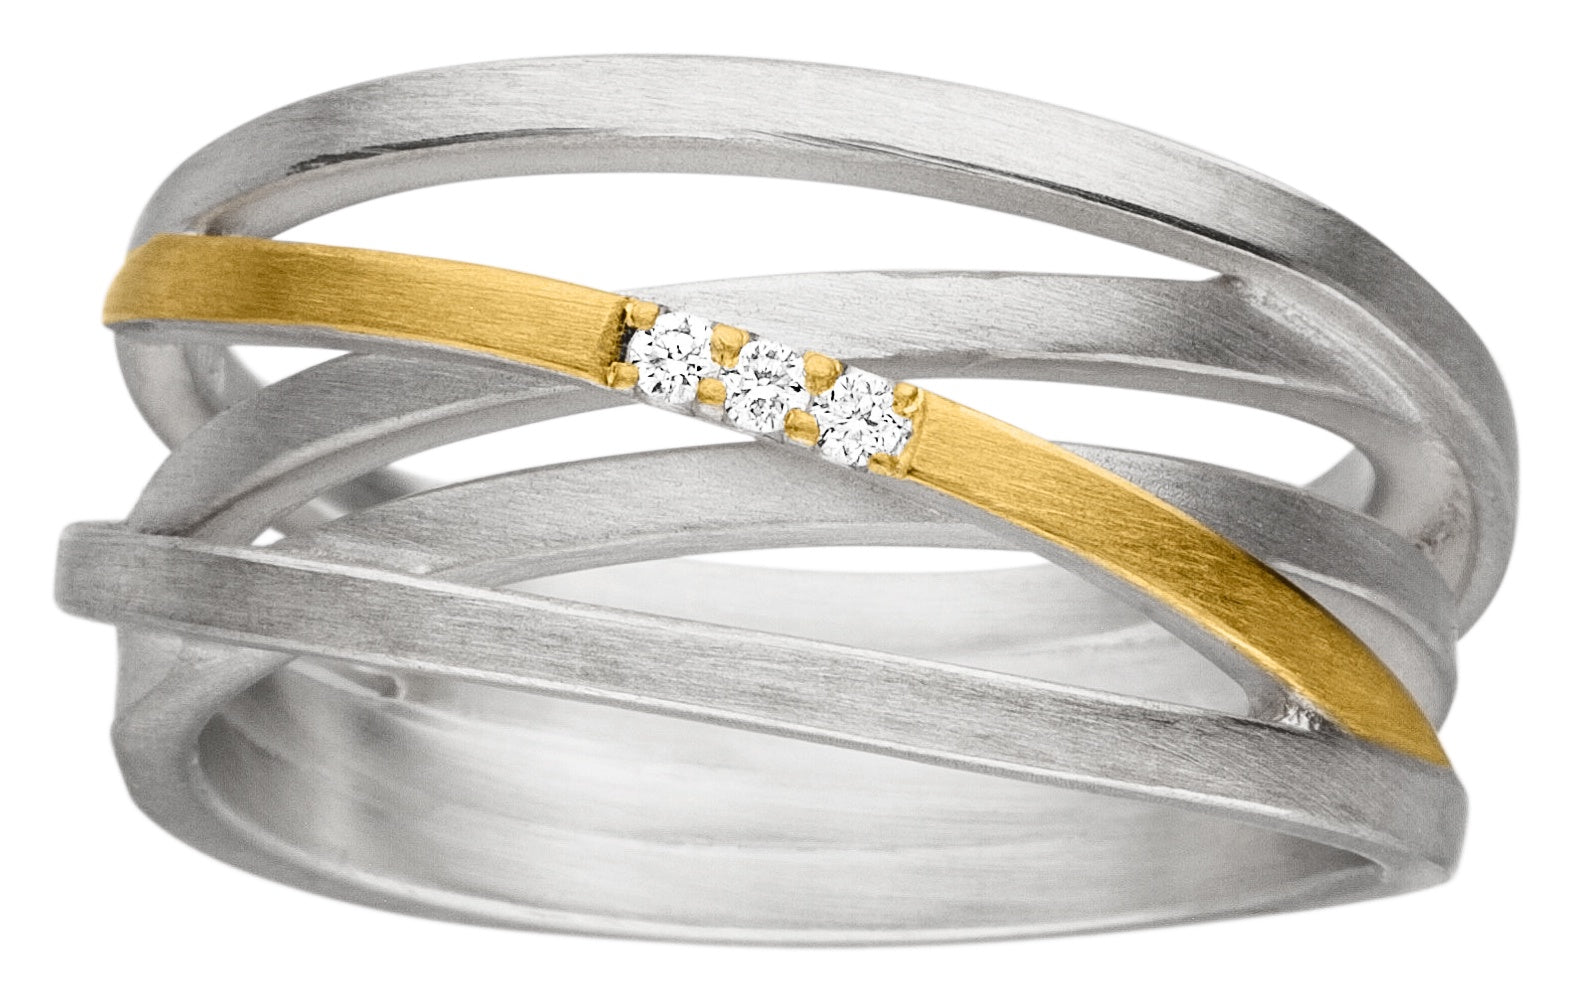 Silver & Gold Interwoven ring with a Trio diamonds